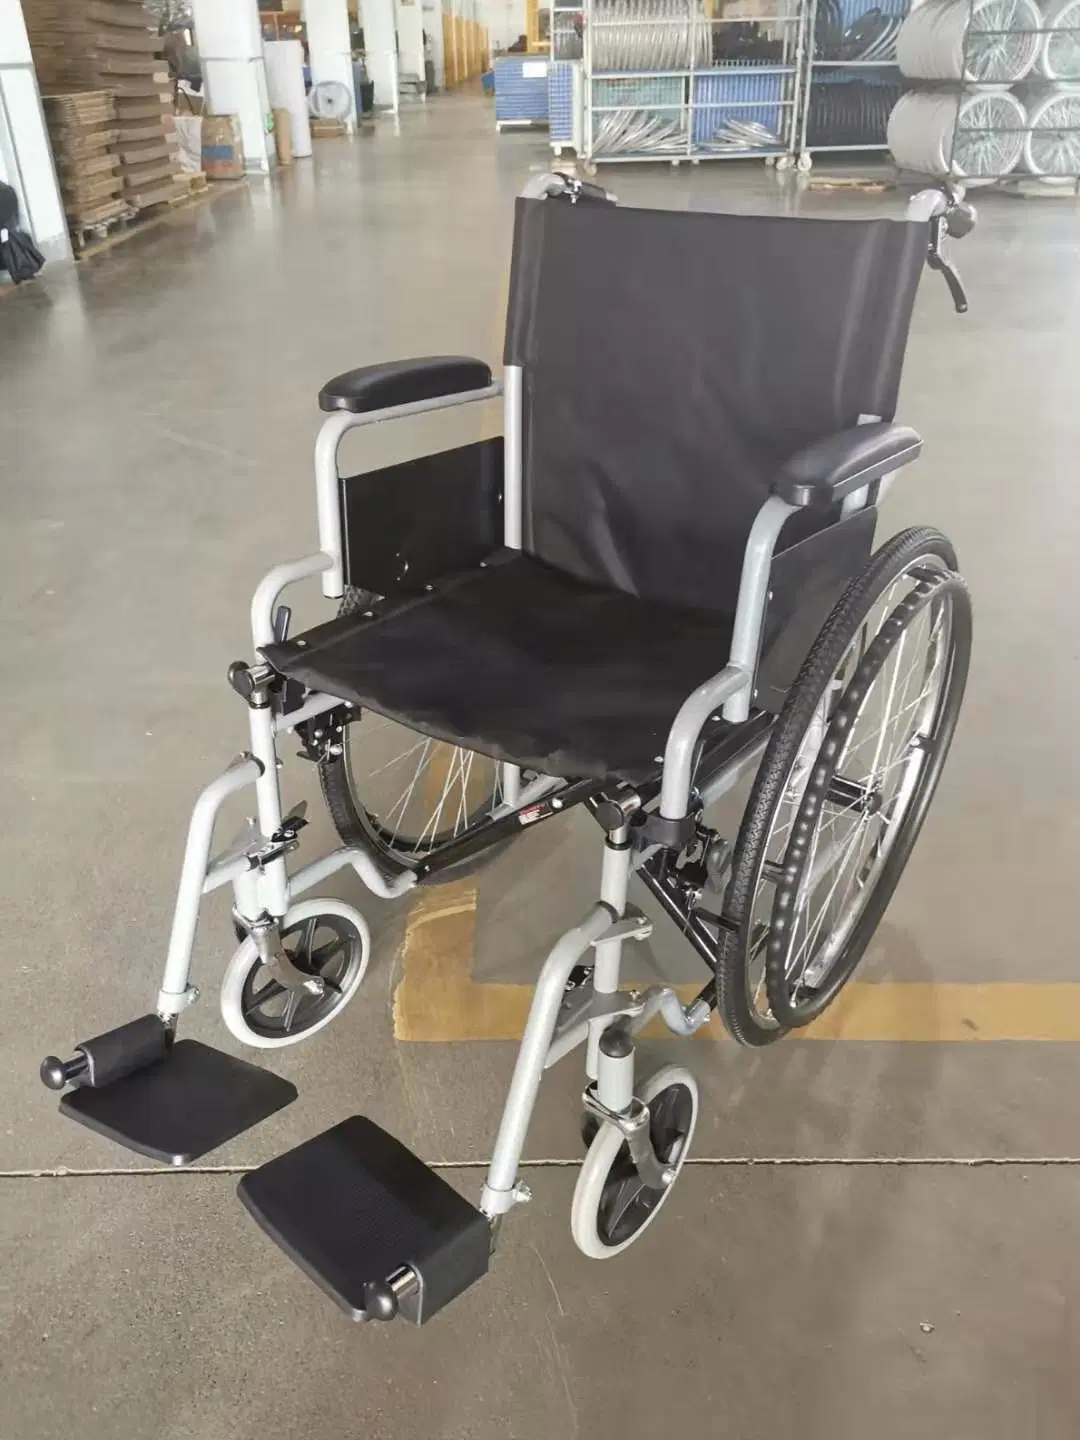 Precios baratos deporte ordinaria plegable silla de ruedas eléctrica otros productos de cuidado de salud de 2022.